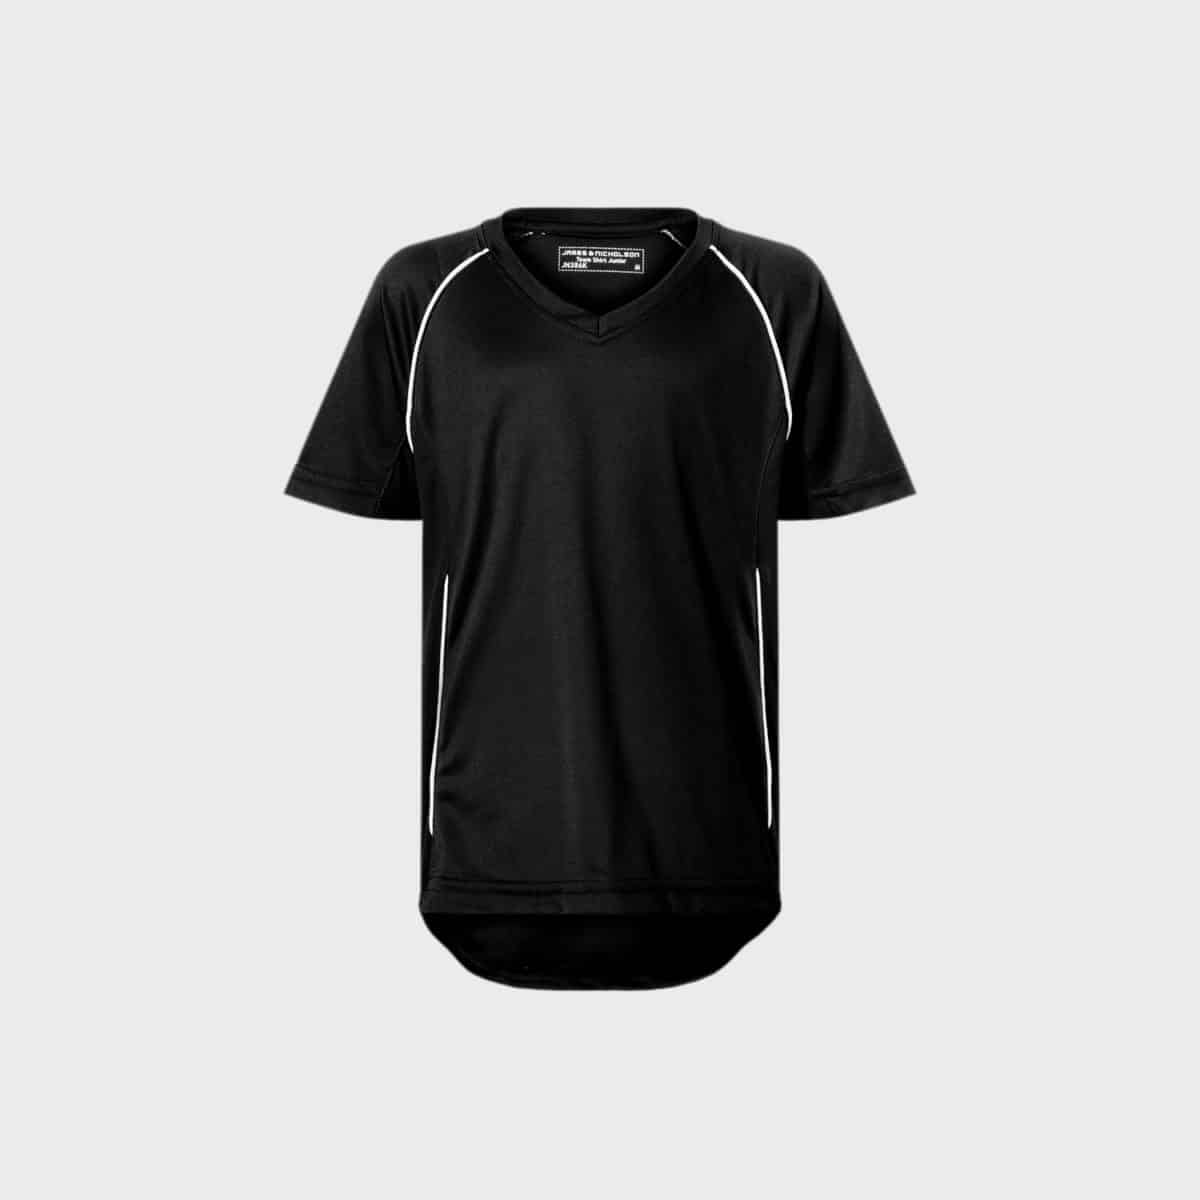 sportshirt-mannschafts-t-shirt-unisex-black-white-kaufen-besticken_stickmanufaktur